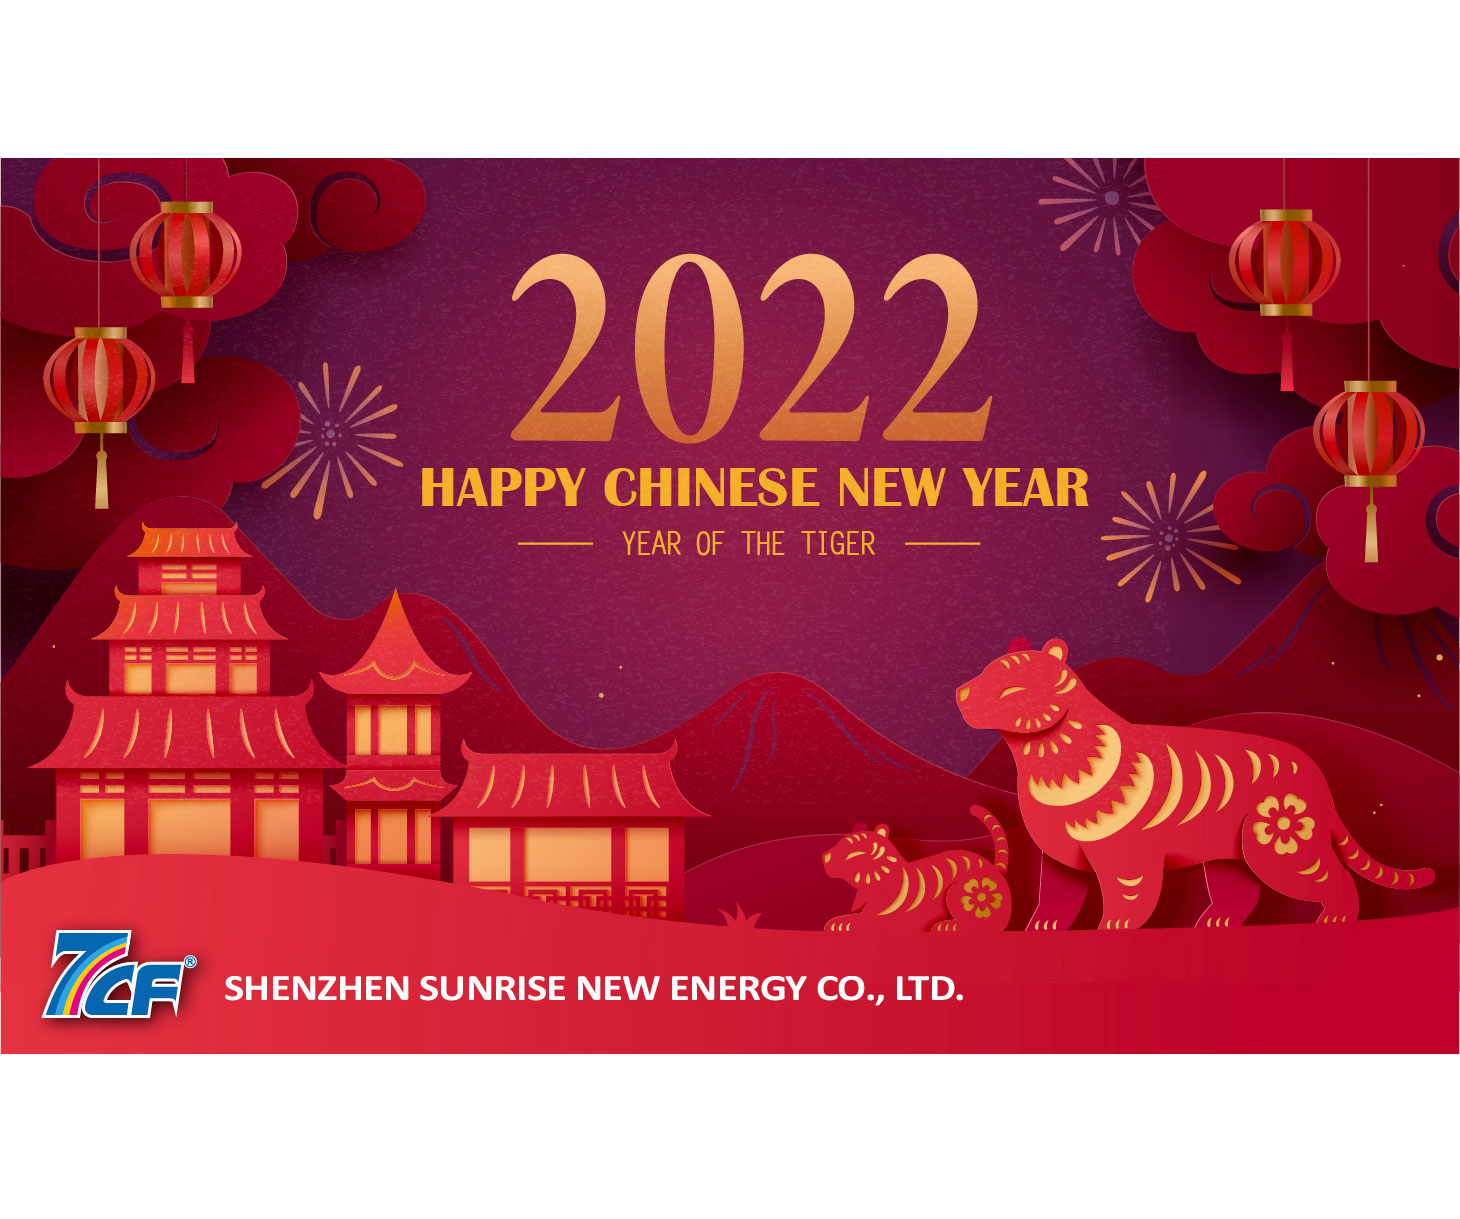 Shenzhen Sunrise New Energy Co.,Ltd. Indirizzo del nuovo anno 2022